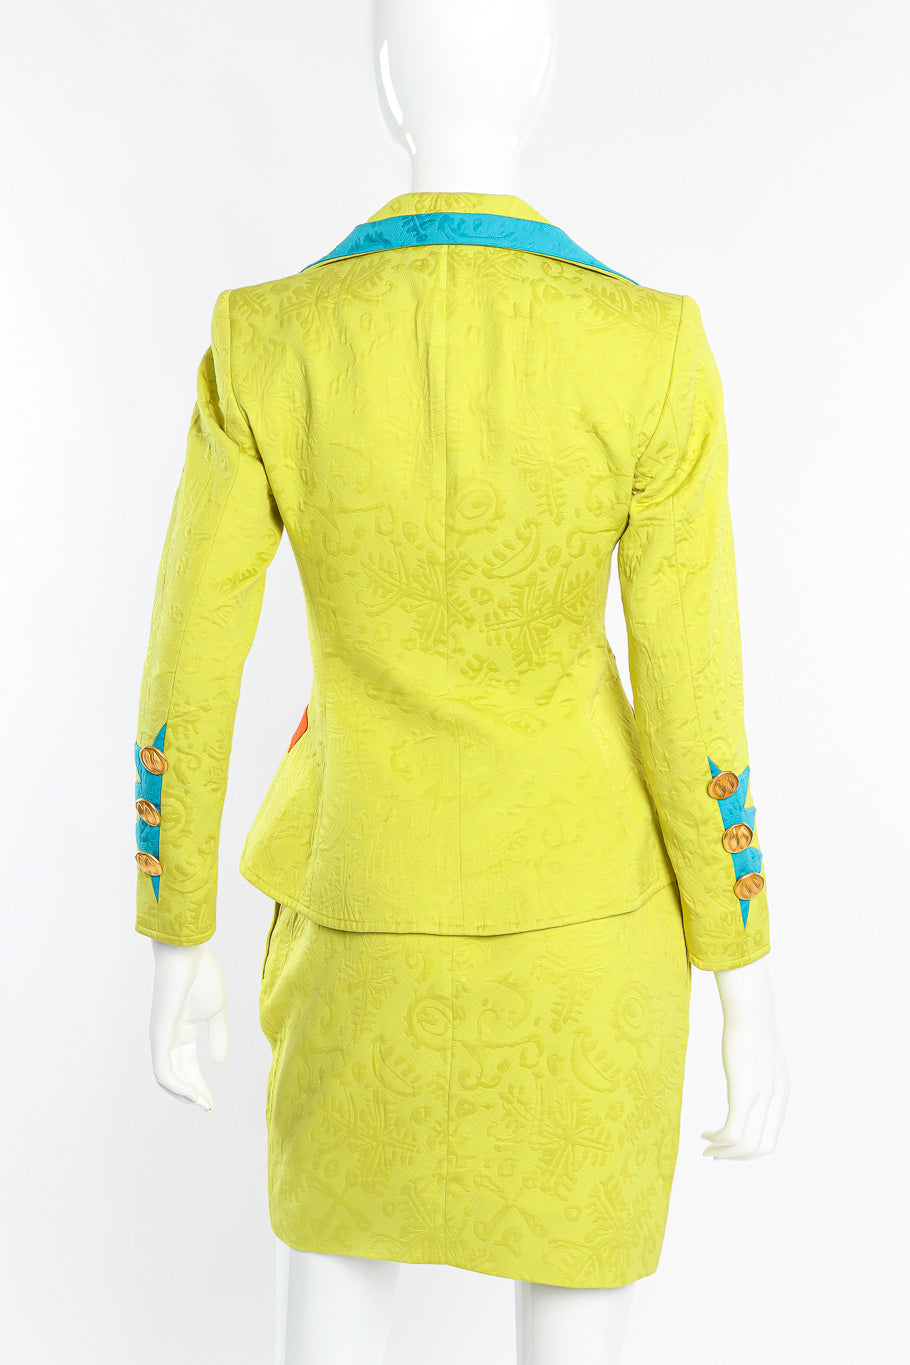 Vintage Christian Lacroix Appliqué Peplum Jacket & Skirt Set back view on mannequin @Recessla